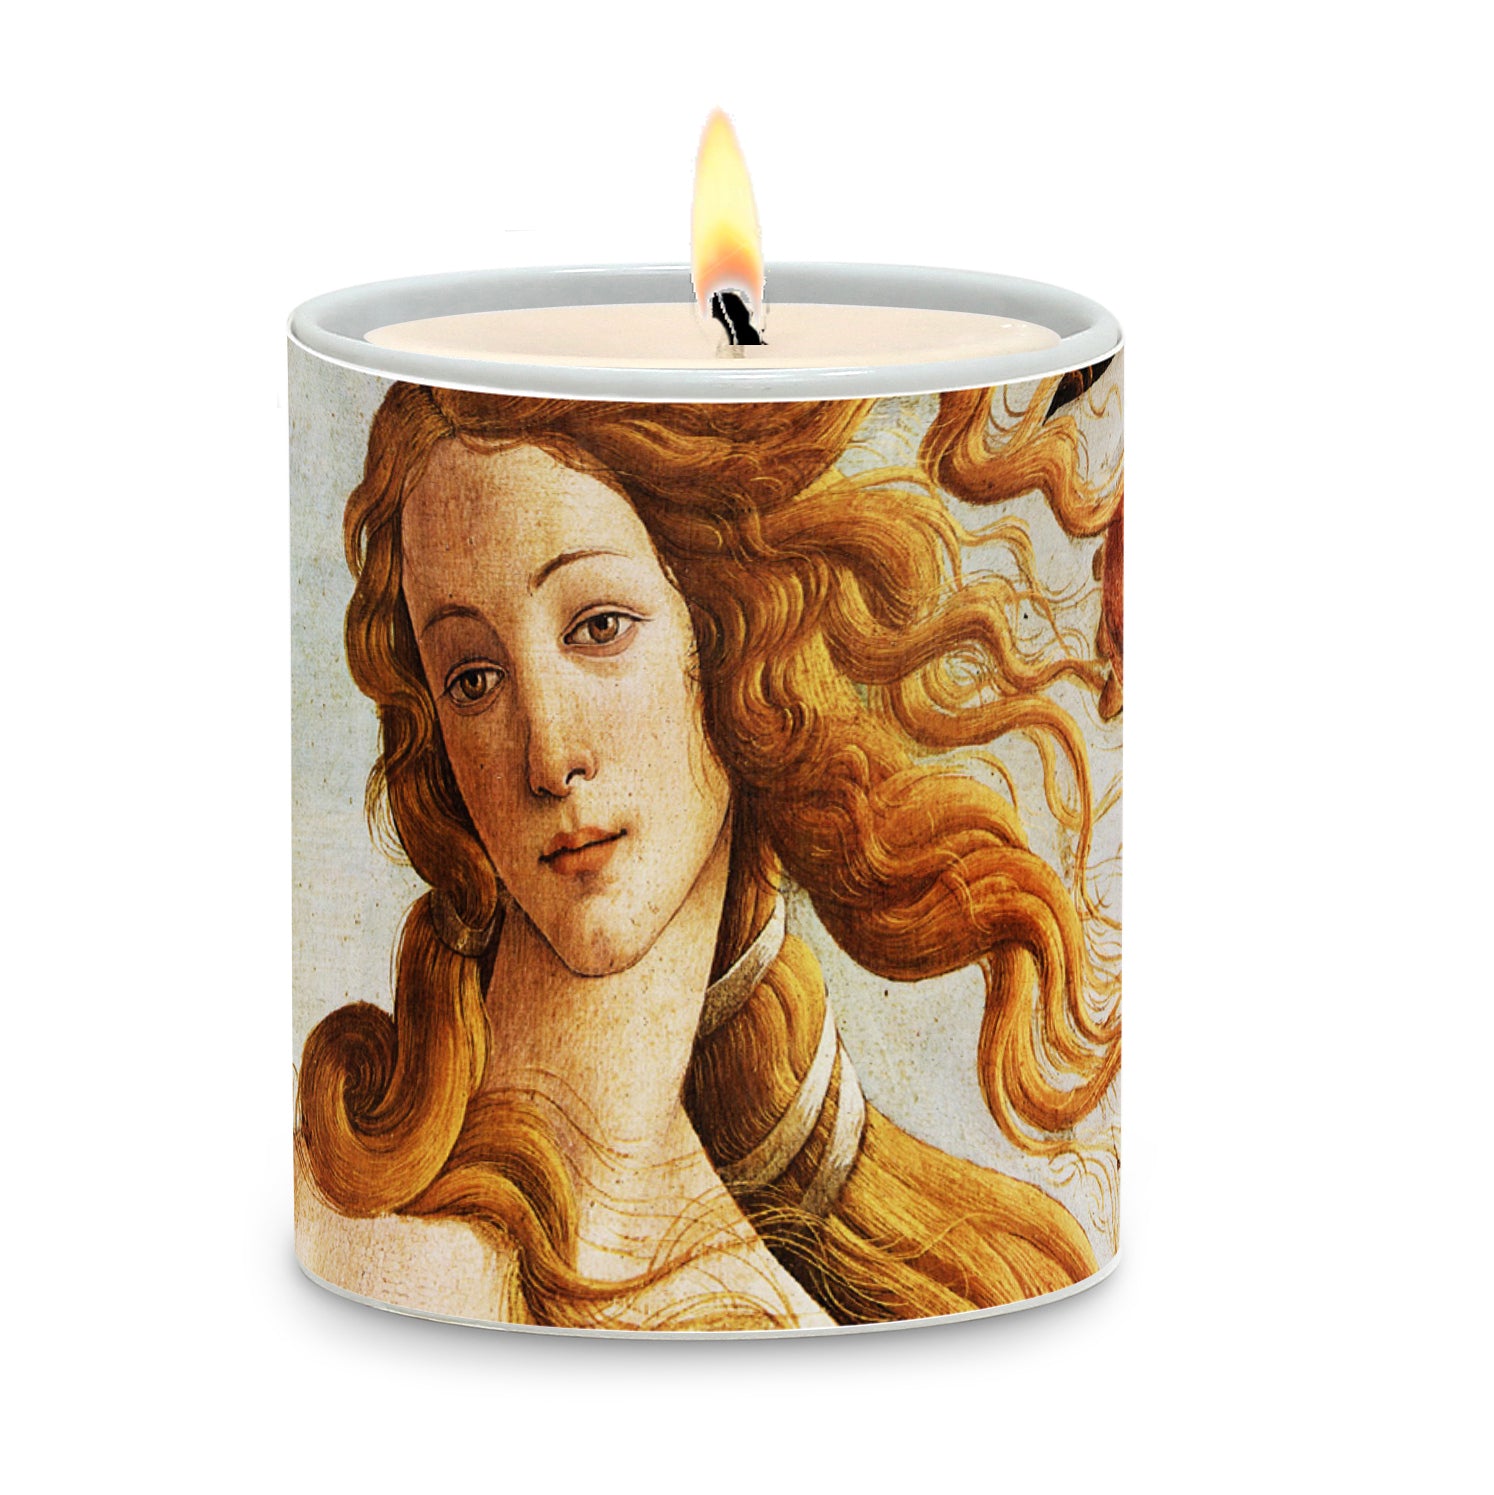 SUBLIMART: Affresco Design - Porcelain Soy Wax Candle (Design #AFF15)